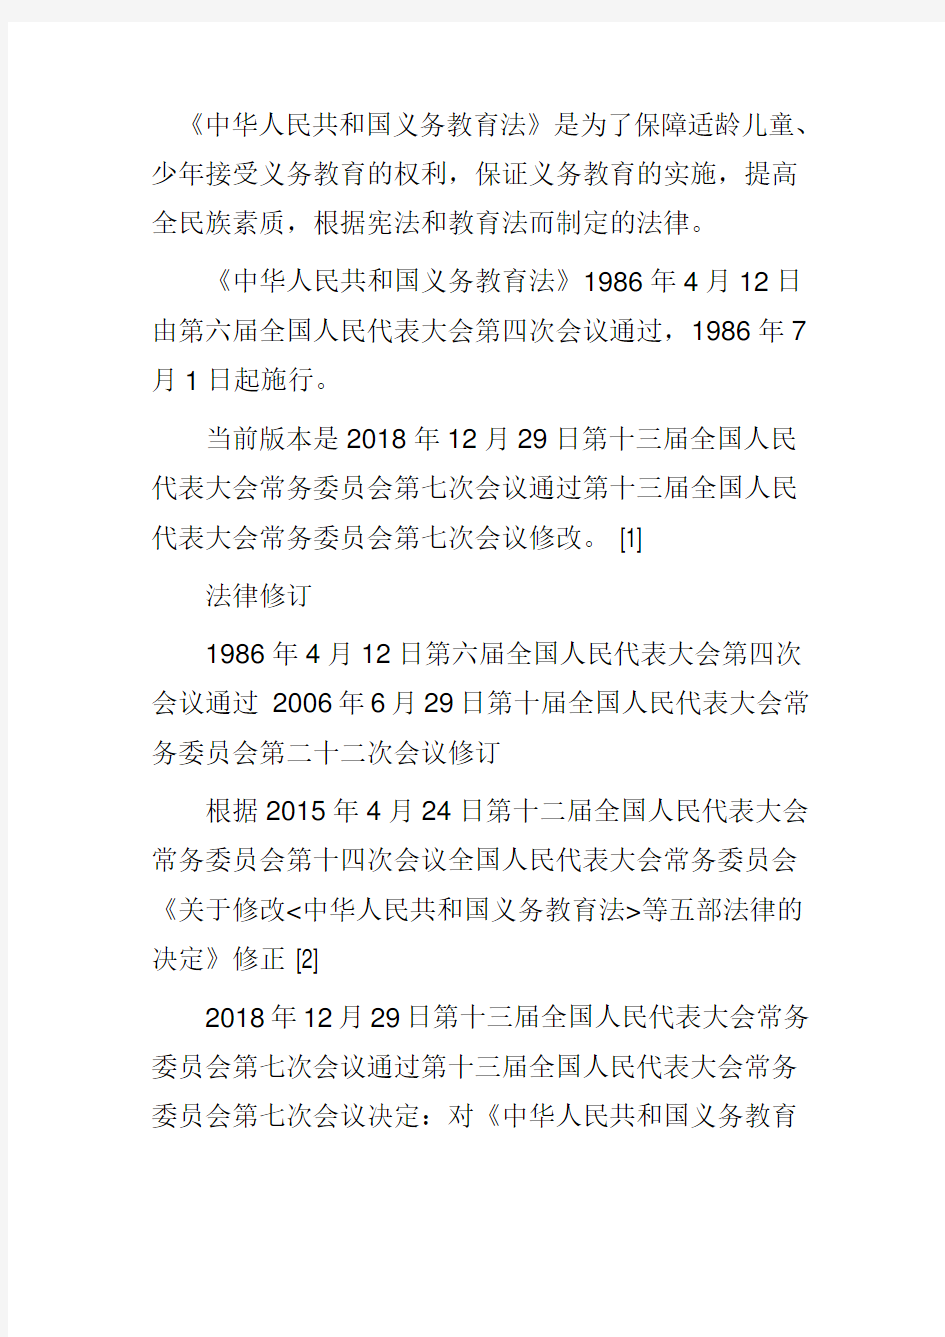 《中华人民共和国义务教育法》是为了保障适龄儿童、